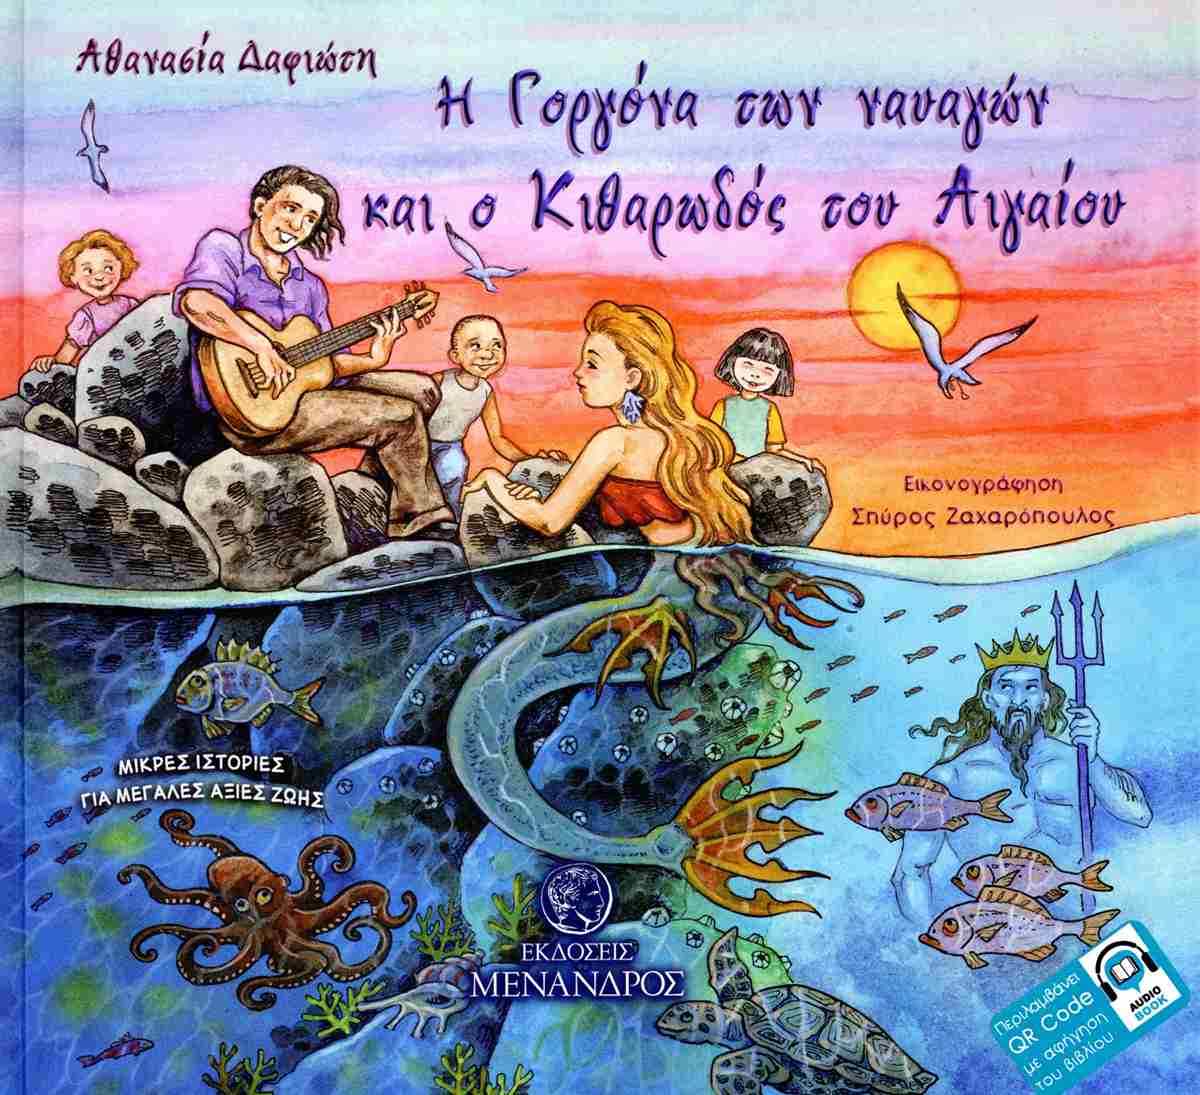 «Η Γοργόνα των ναυαγών και ο κιθαρωδός του Αιγαίου» βιβλιοπαρουσίαση στο Εθνικό Ωδείο Παράρτημα Μυτιλήνης